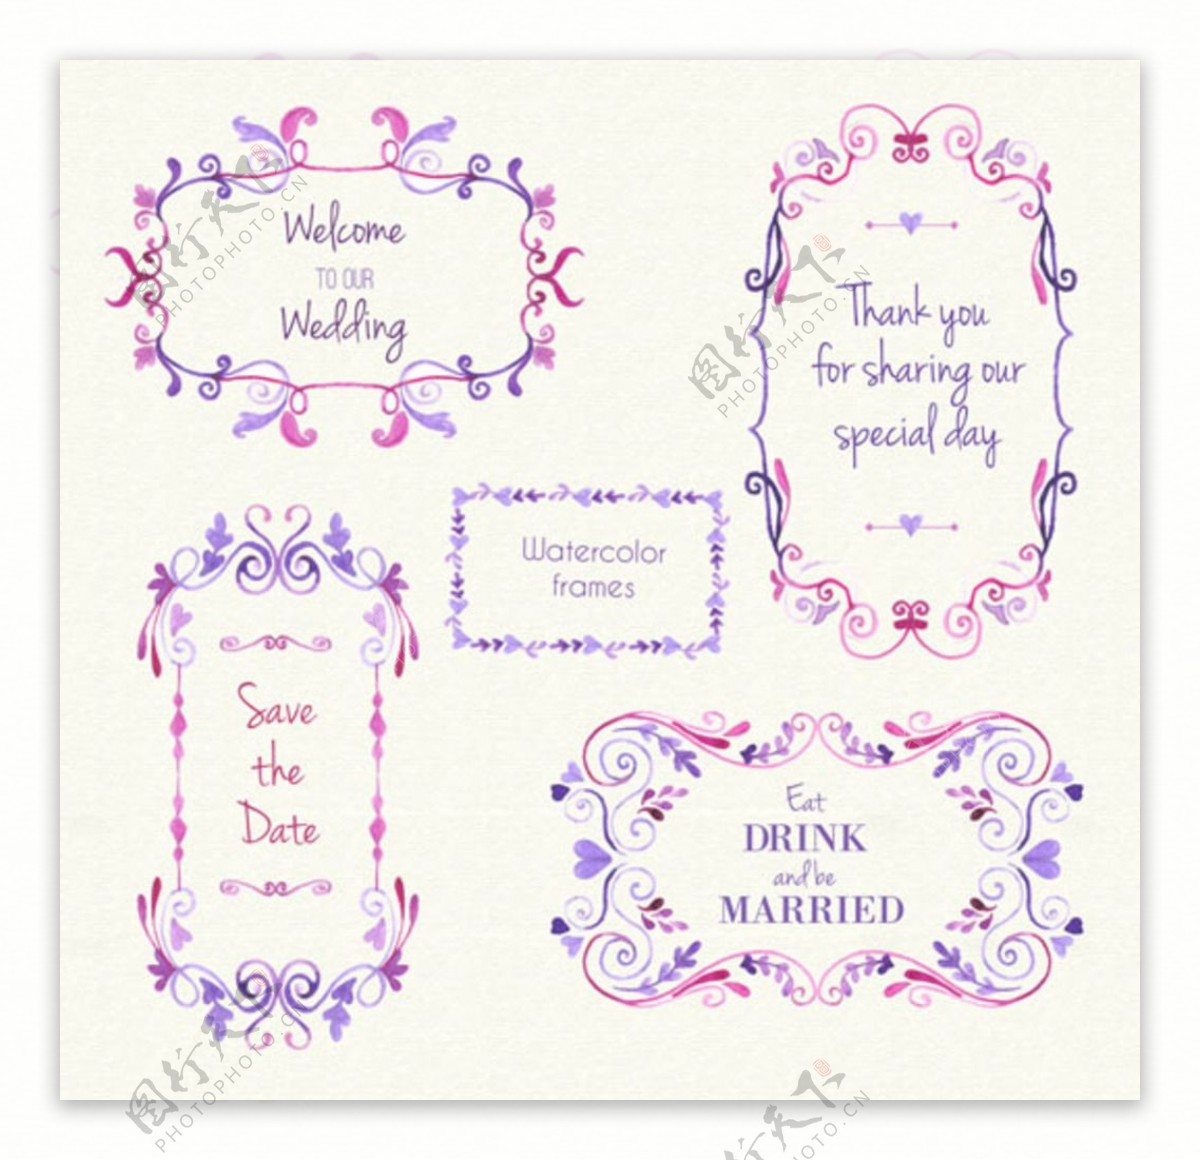 手绘水彩婚礼装饰标签